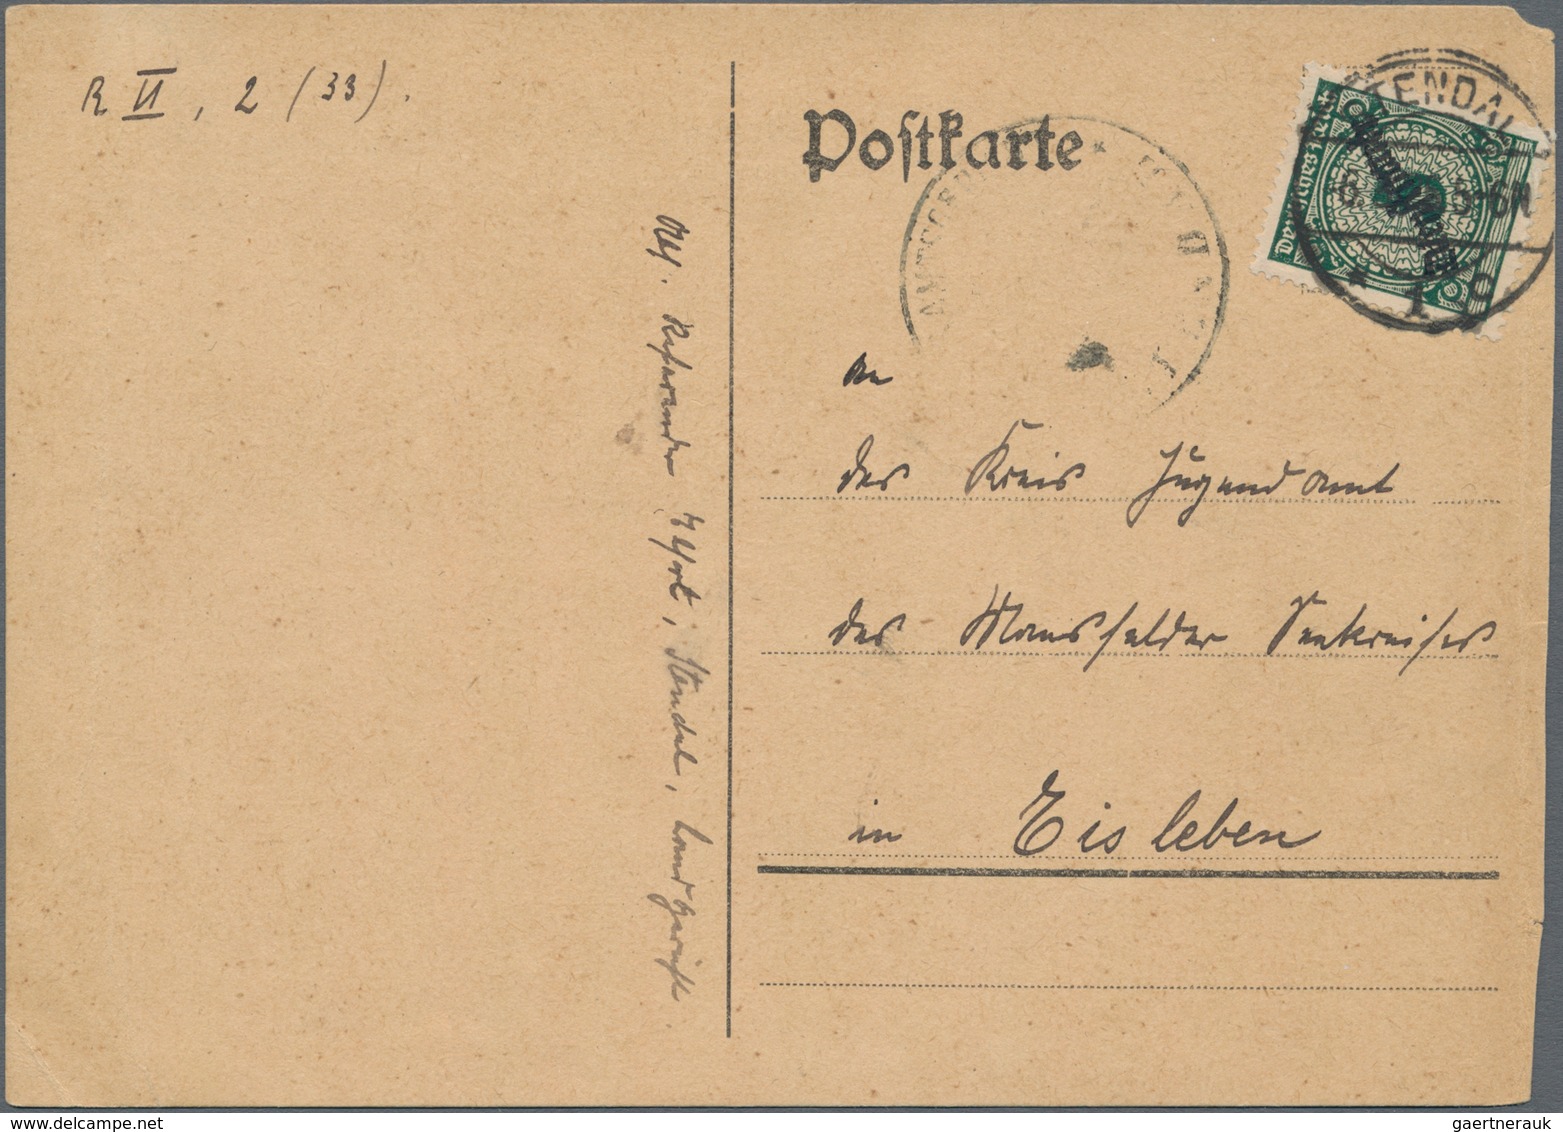 Deutschland: 1898/1949, Kleines Nettes Lot, Dabei Dt.Post China MiNr. 1 II B Im Postfrischen 4er-Blo - Collections